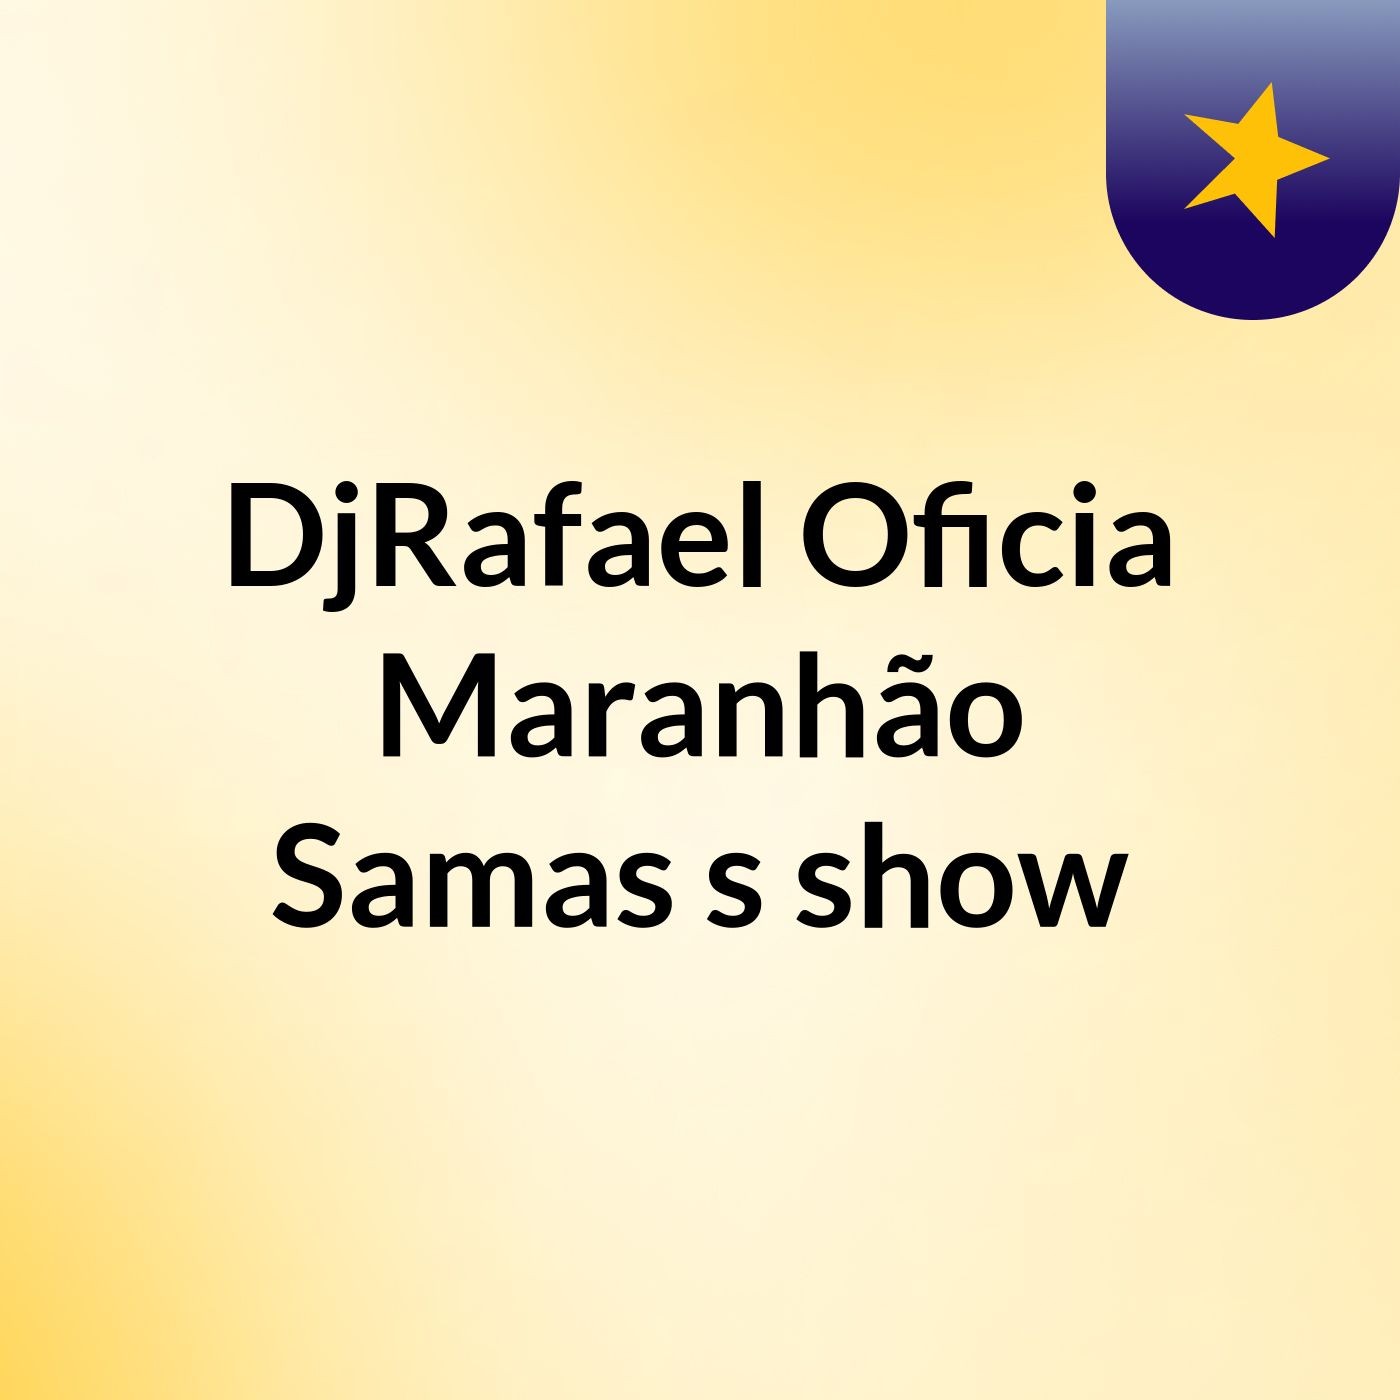 DjRafael Oficia Maranhão Samas's show